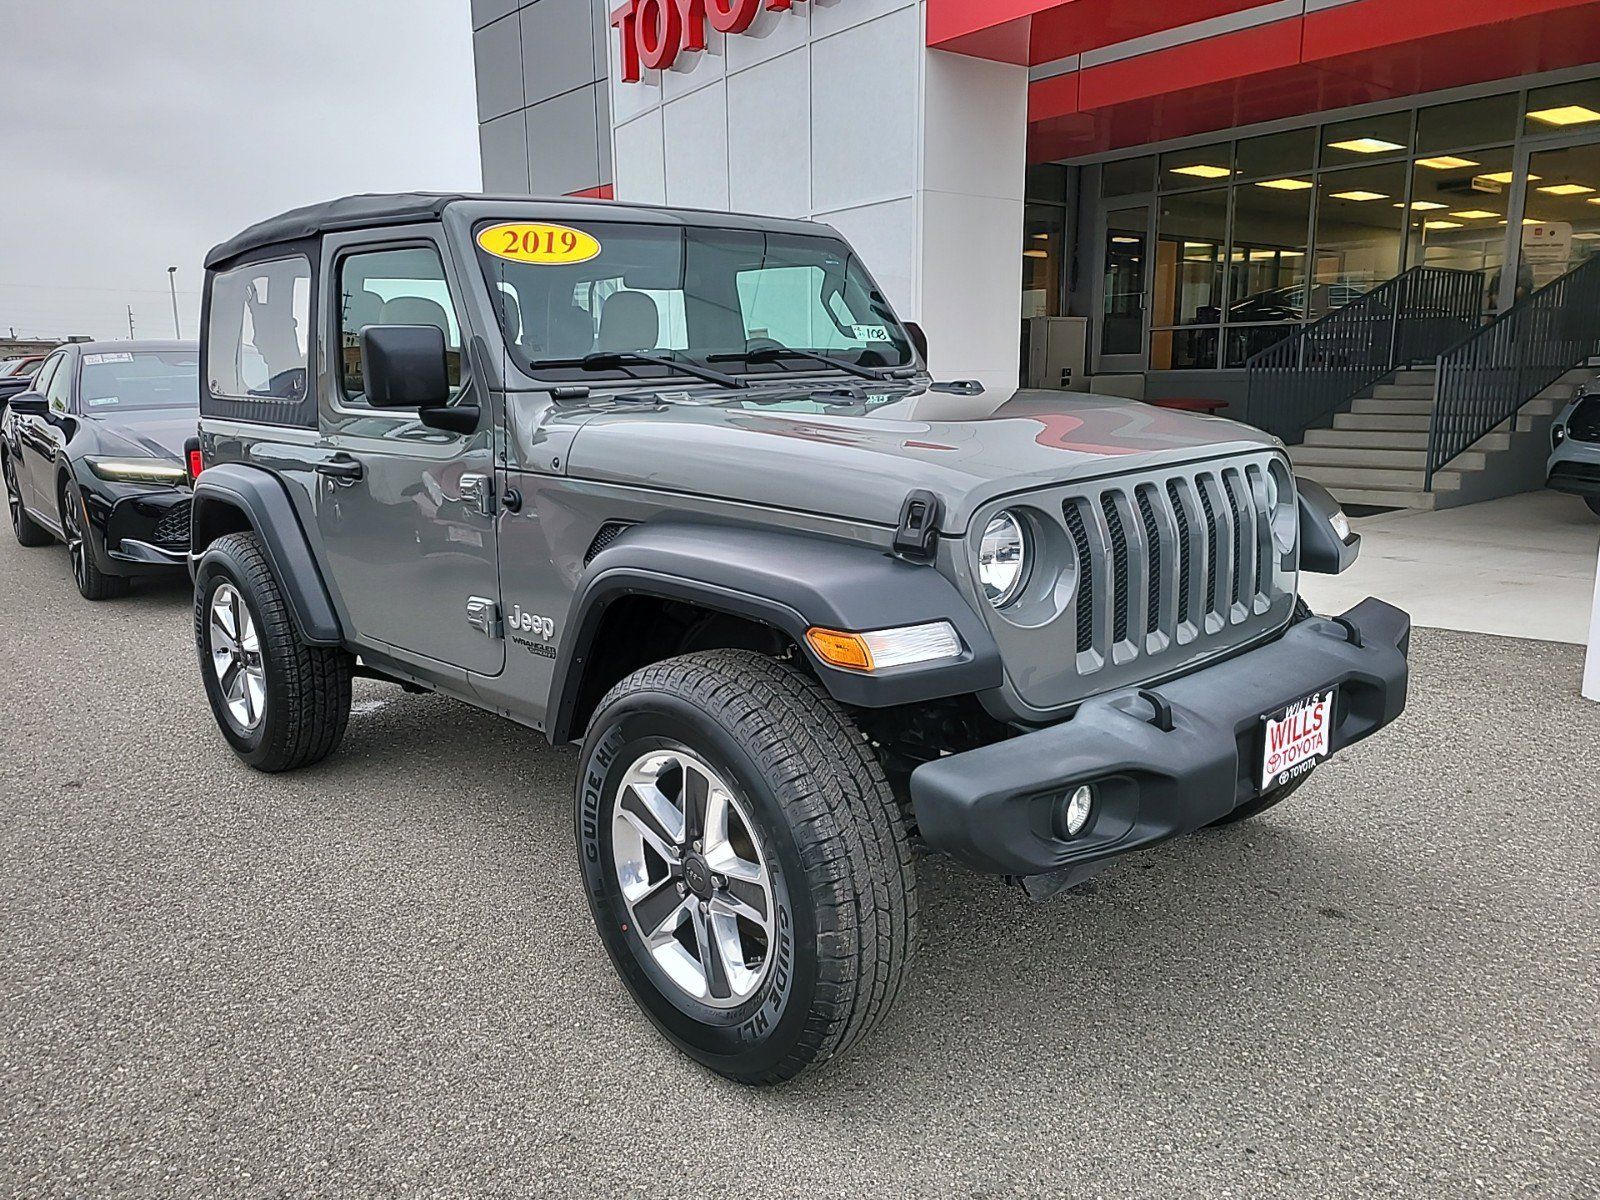 2019 - Jeep - Wrangler - $26,999